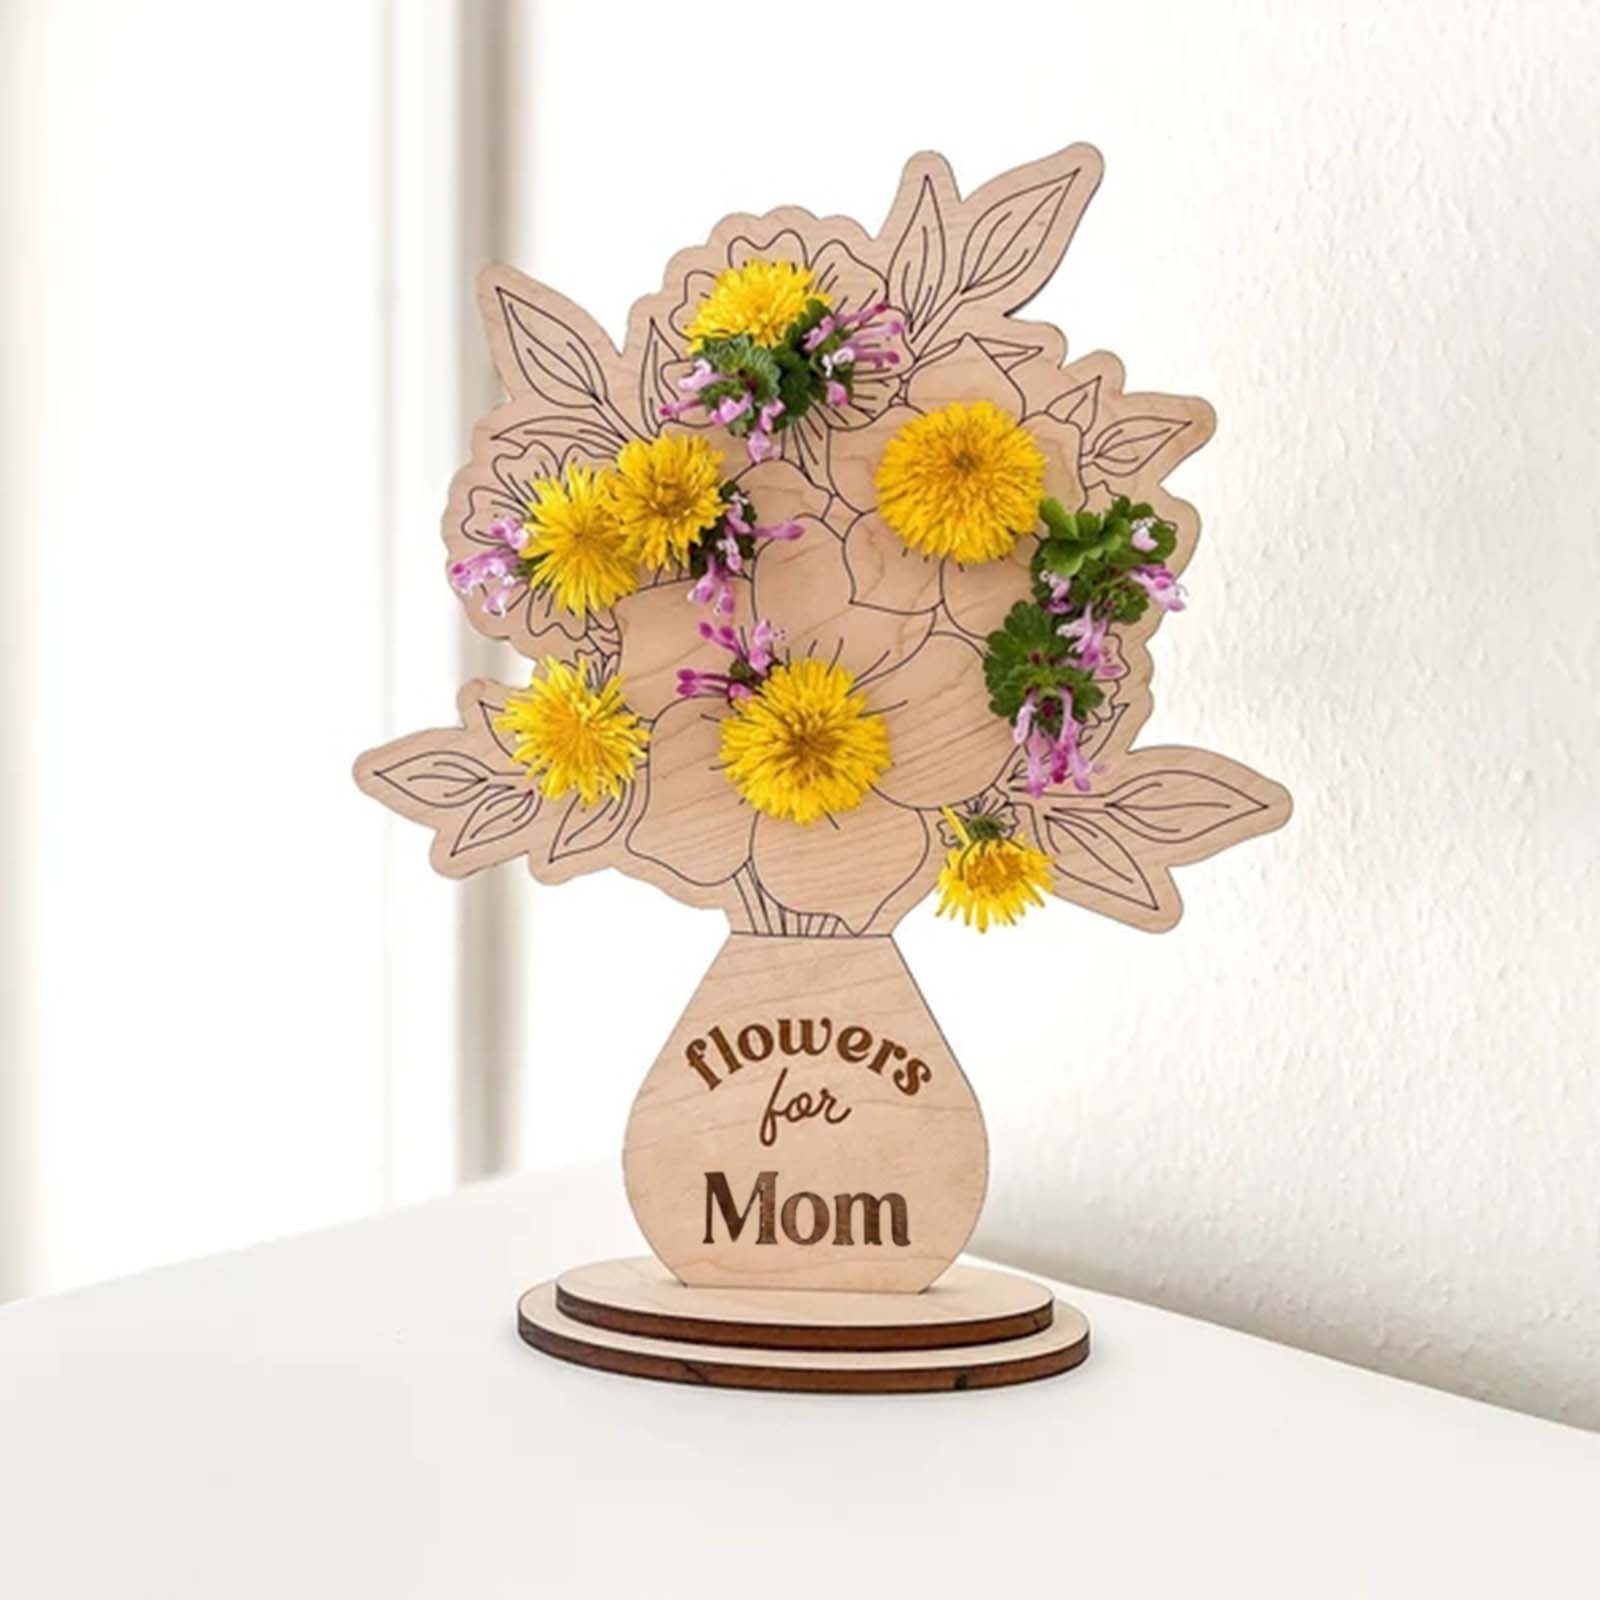 Pjtewawe desktop ornament mother's day diy flower vase holder picked for  mommy flower holder/ mother's day gifts wooden mother's day sign